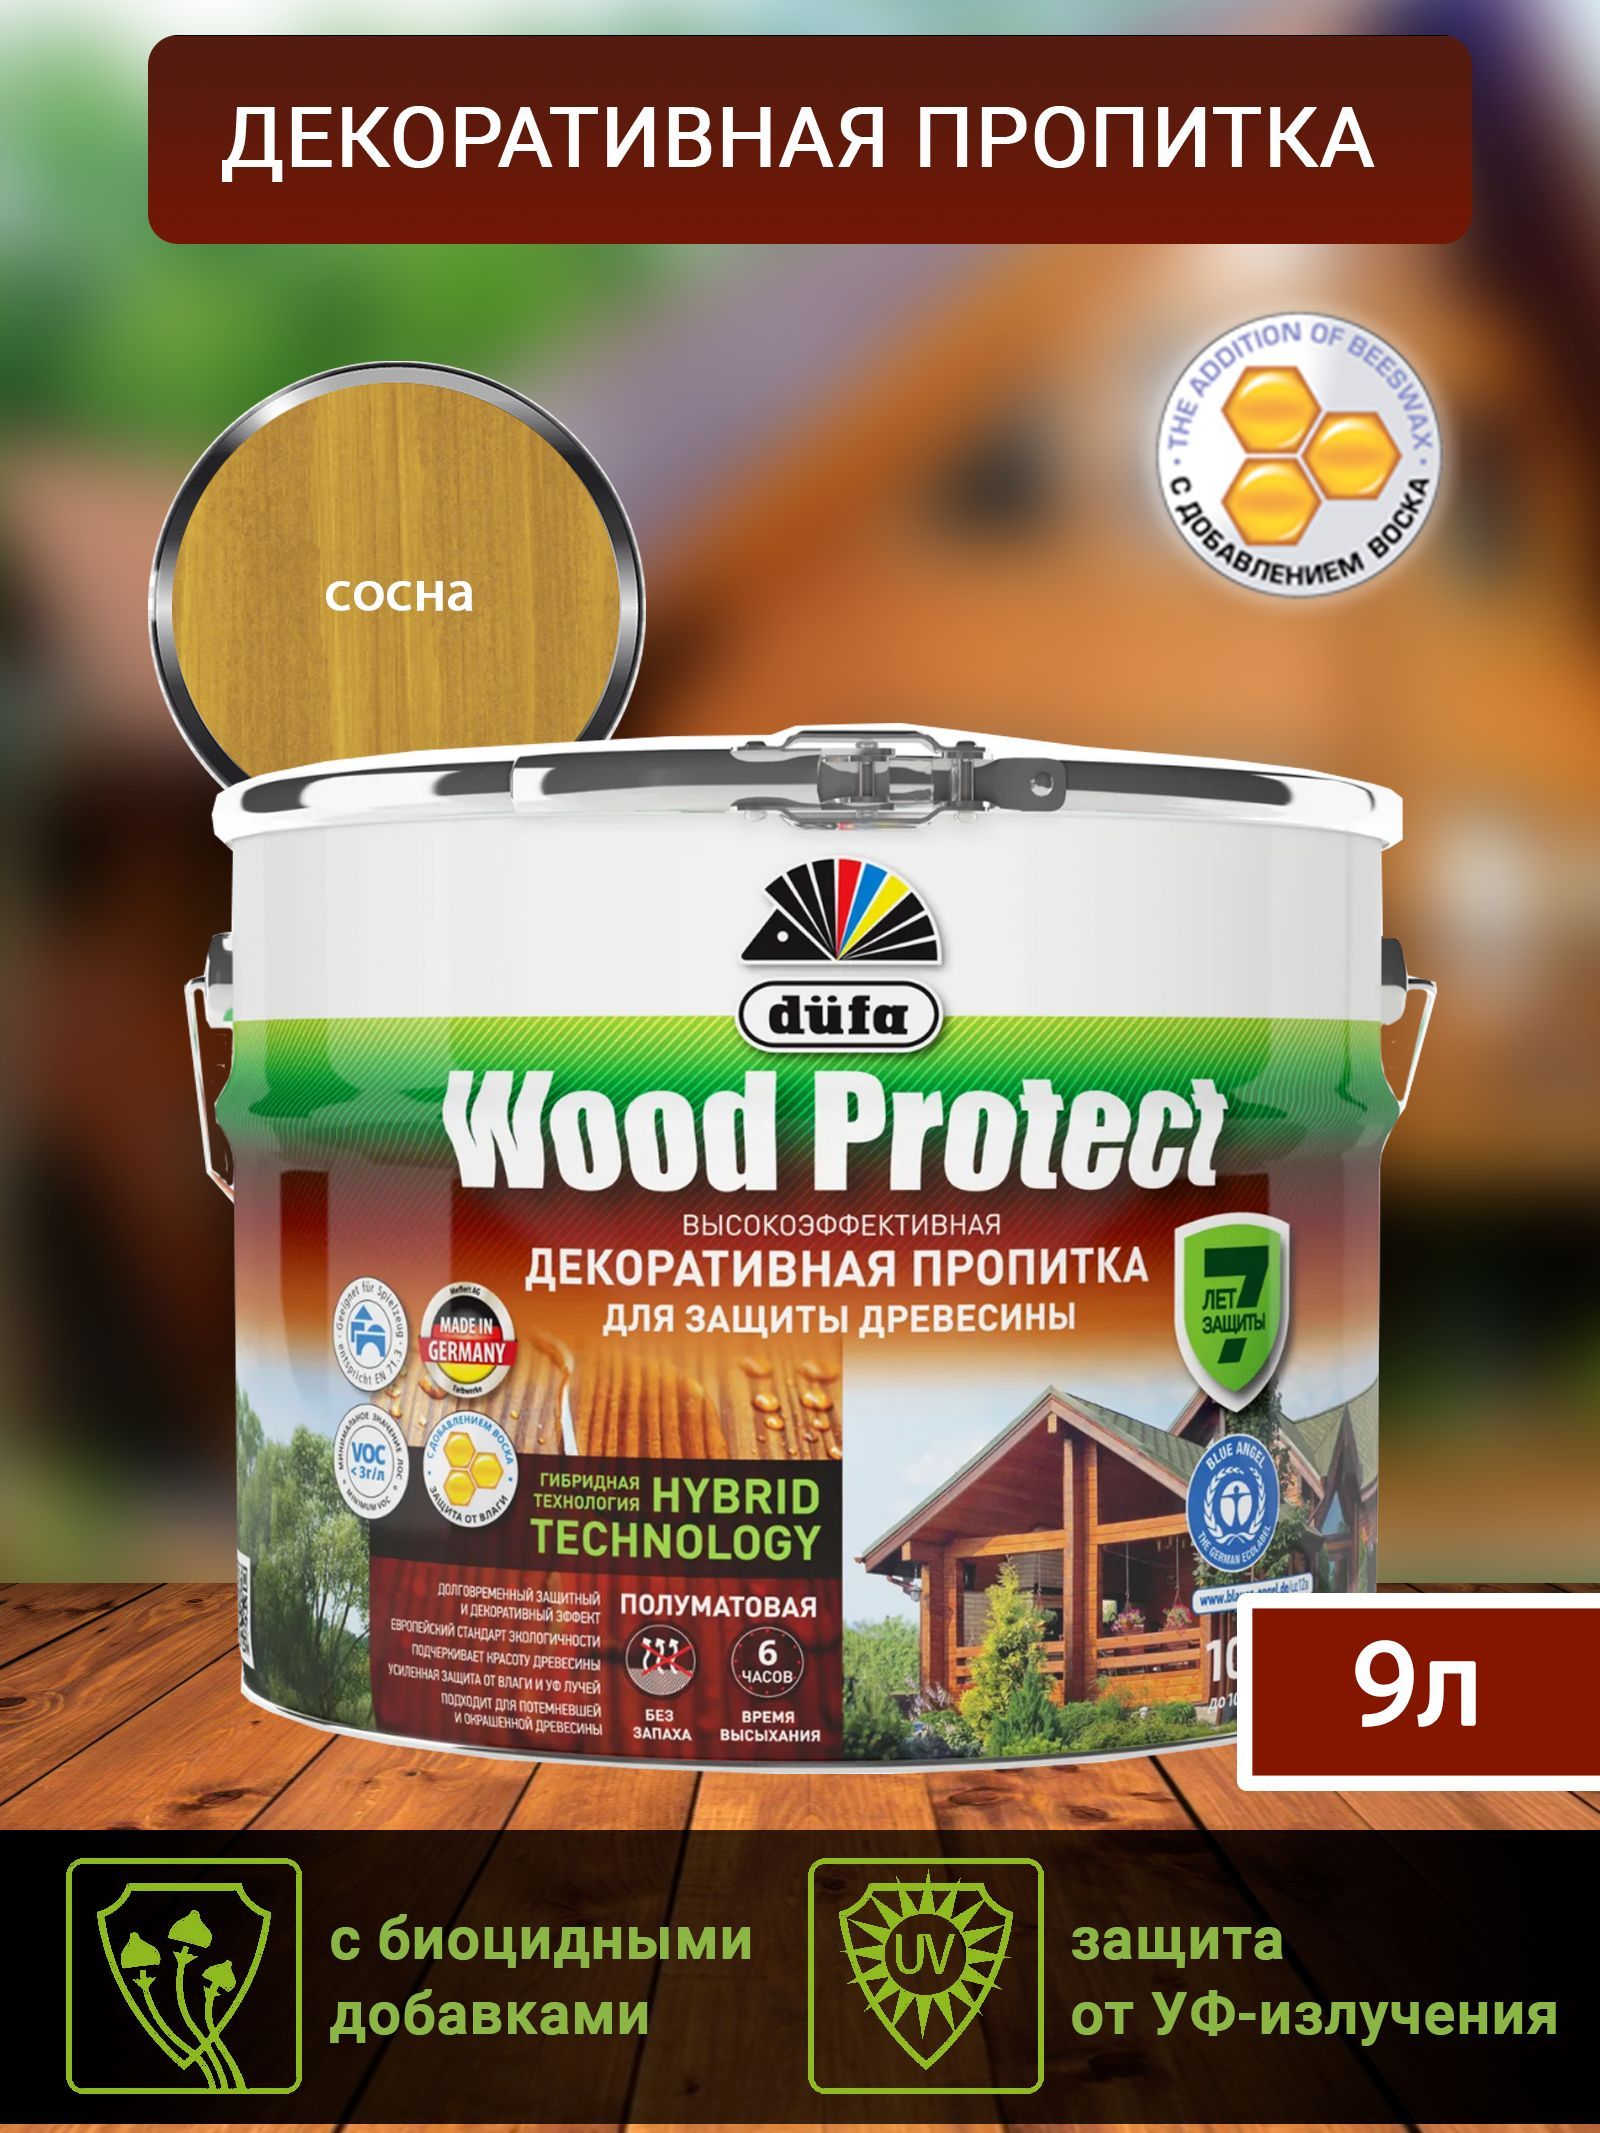 Dufa Пропитка “Wood Protect” для защиты древесины; сосна 9 л, шт